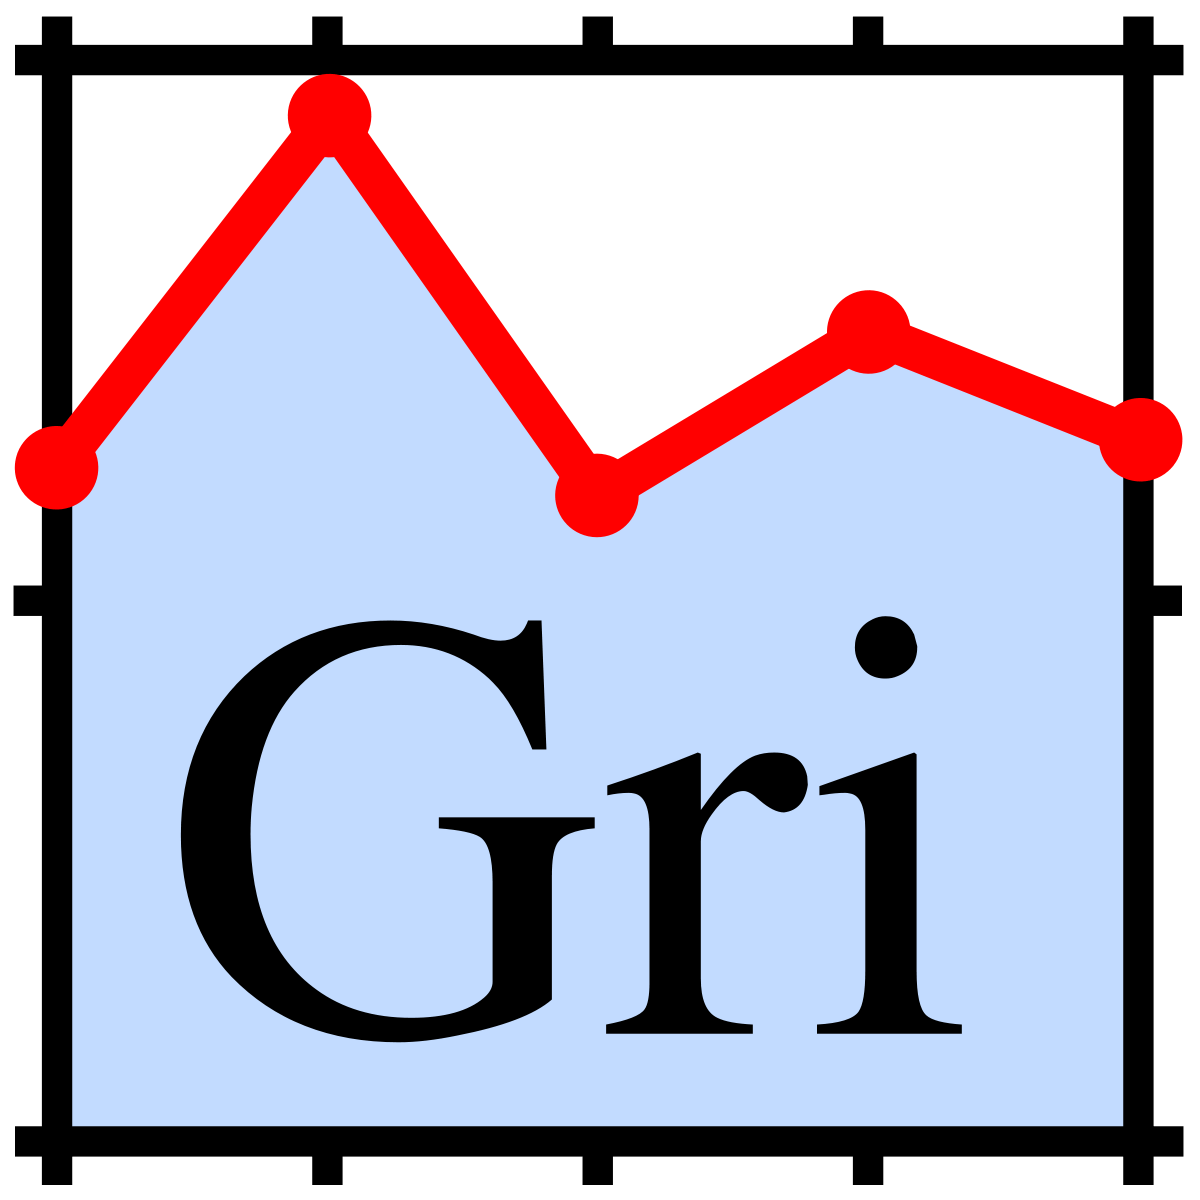 GRI Logo - Gri graphical language